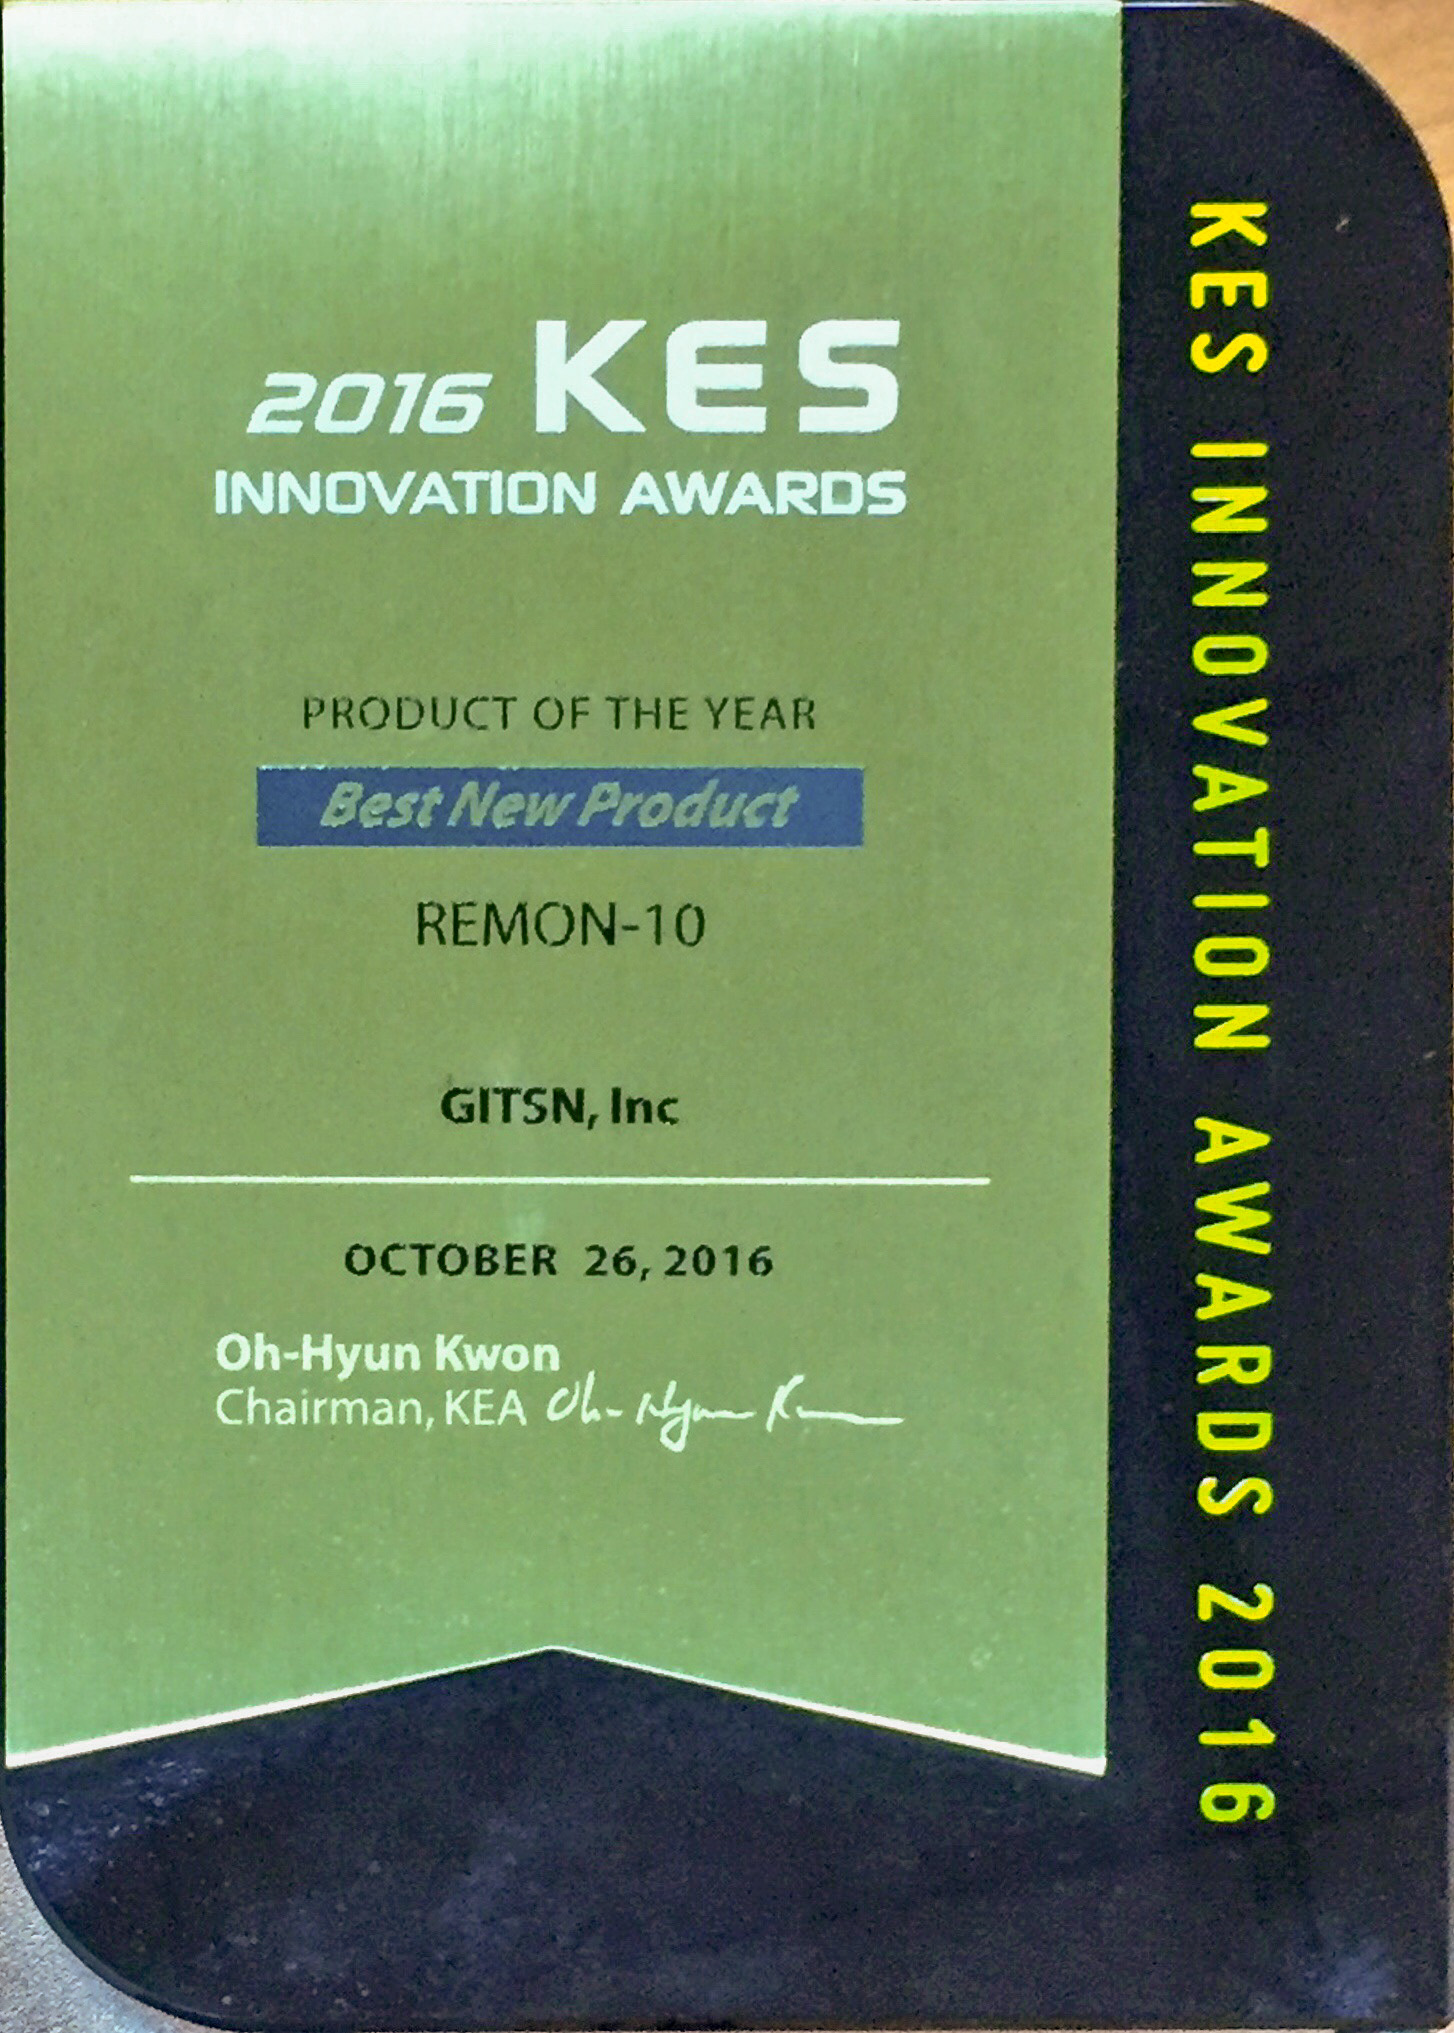 Award from the 2016 KES INNOVATION AWARDS